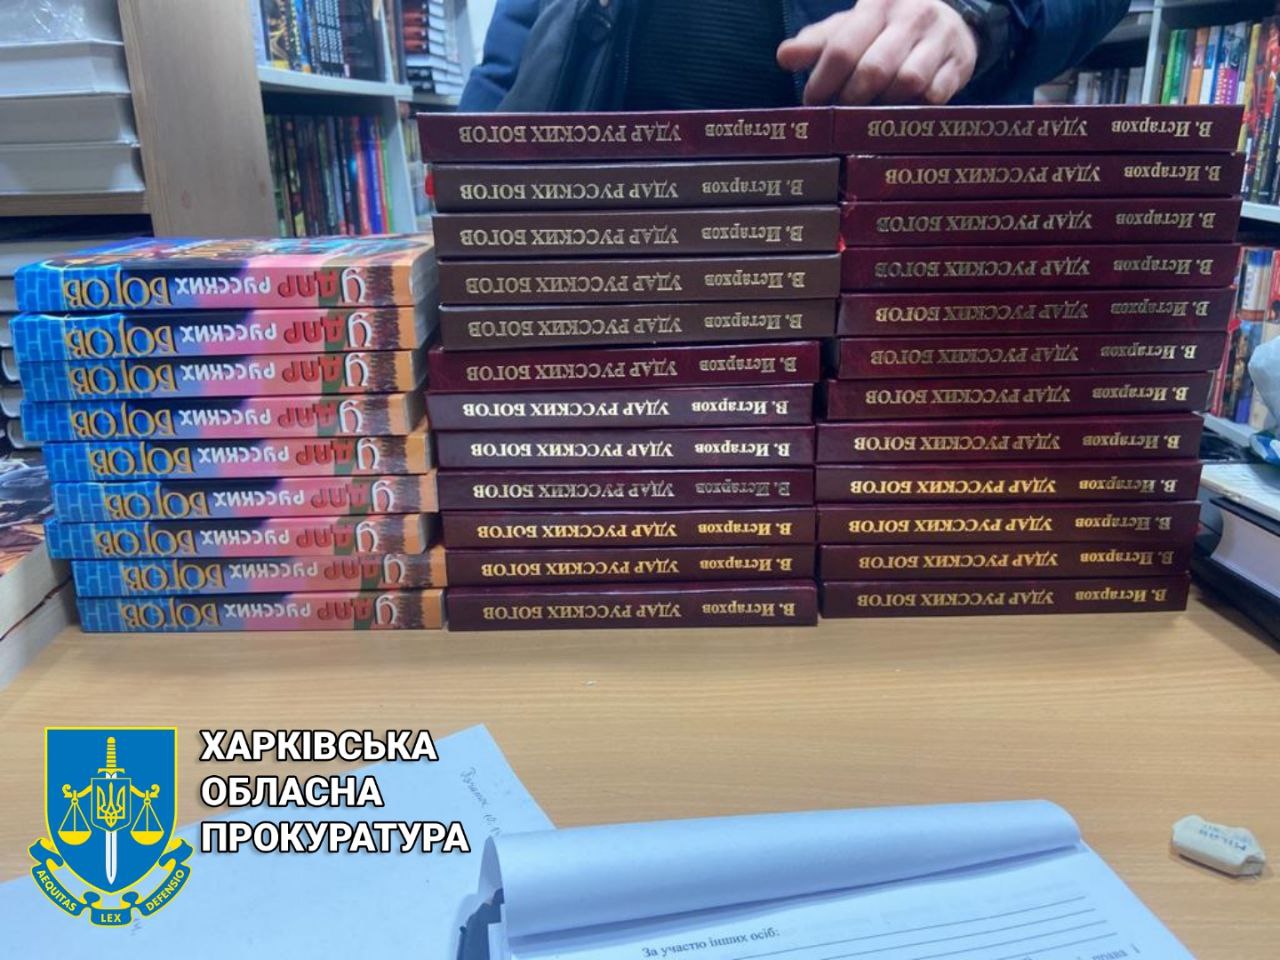 «Удар русских богов»: в Харькове супруги продавали запрещенные книги